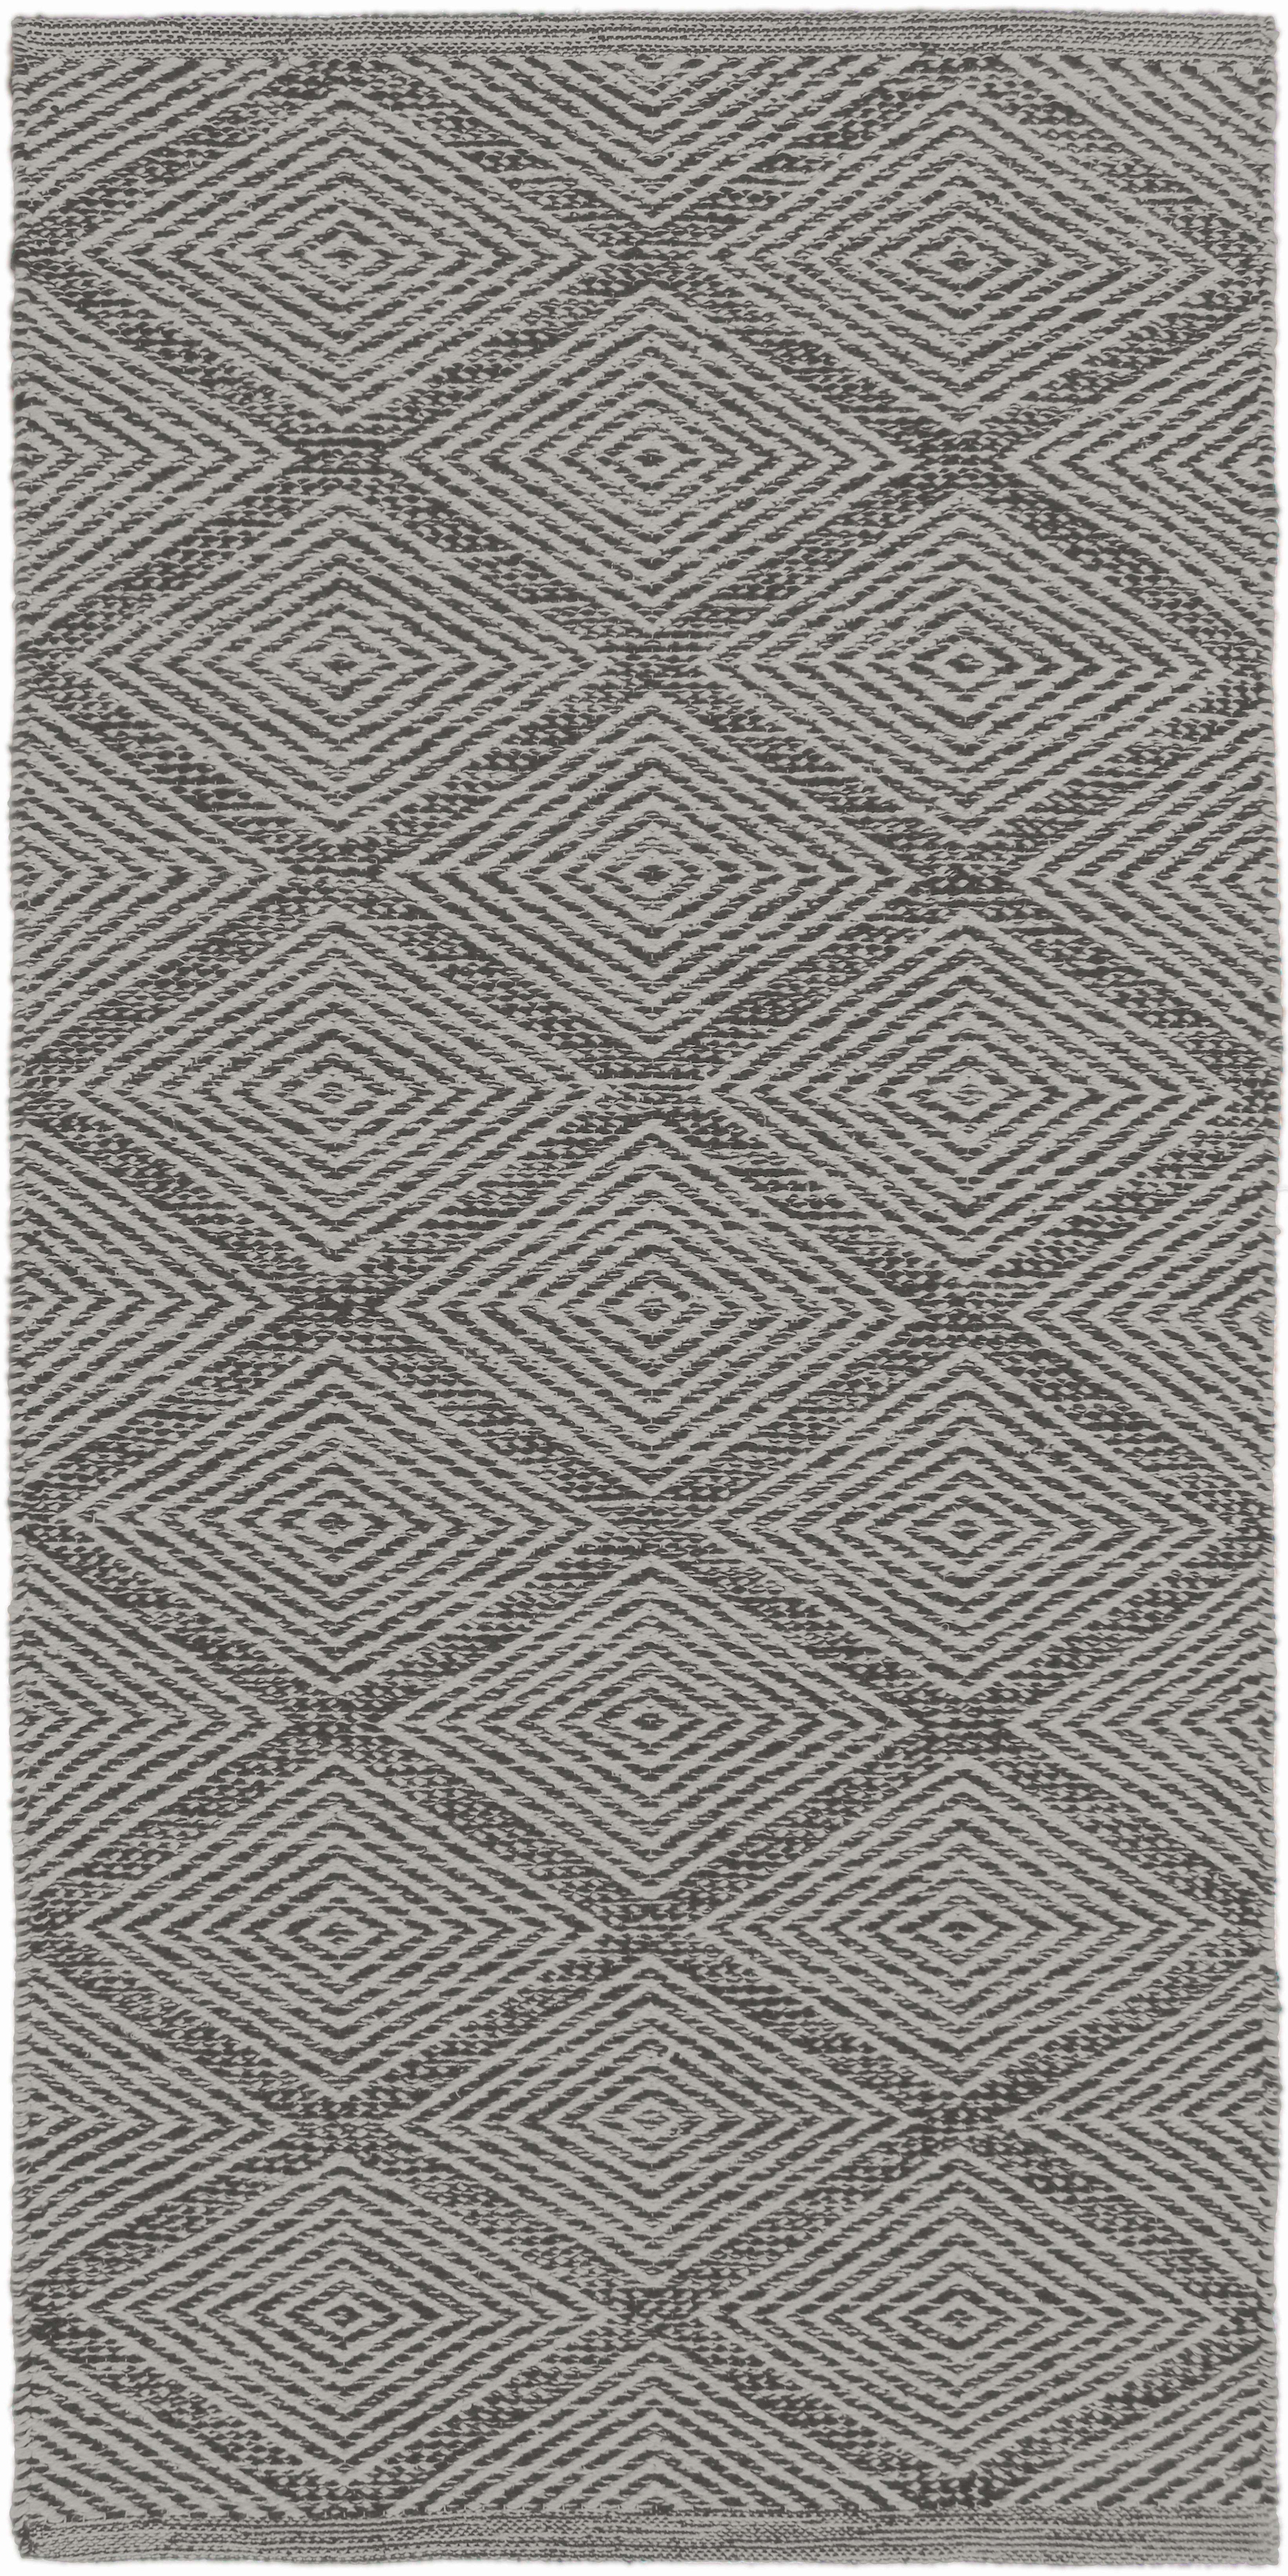 RONGYSZŐNYEG  Diamant Grey  - Szürke, Design, Textil (60/120cm) - Linea Natura